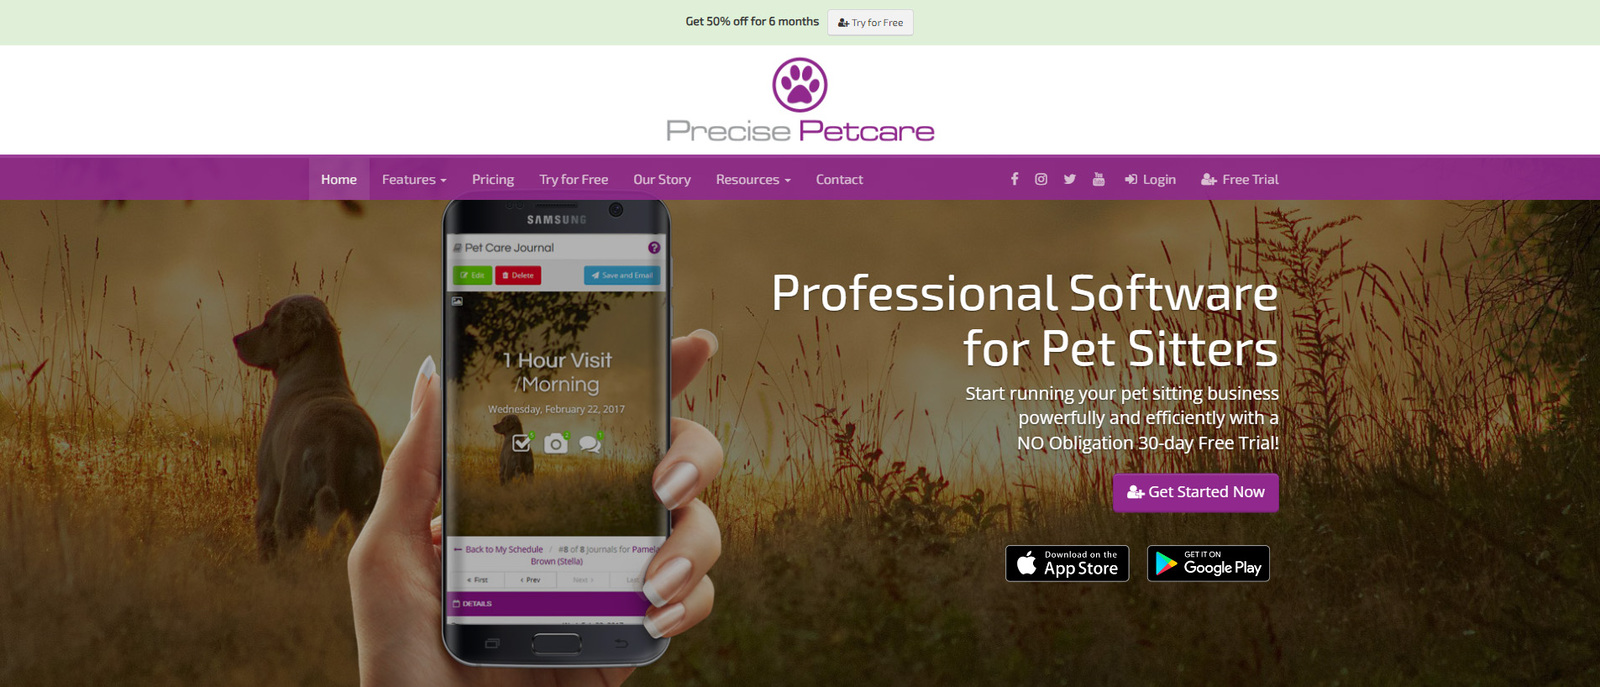 صورة Precise Petcare، أحد أفضل خيارات برامج العناية بالحيوانات الأليفة لمشايات الحيوانات الأليفة.